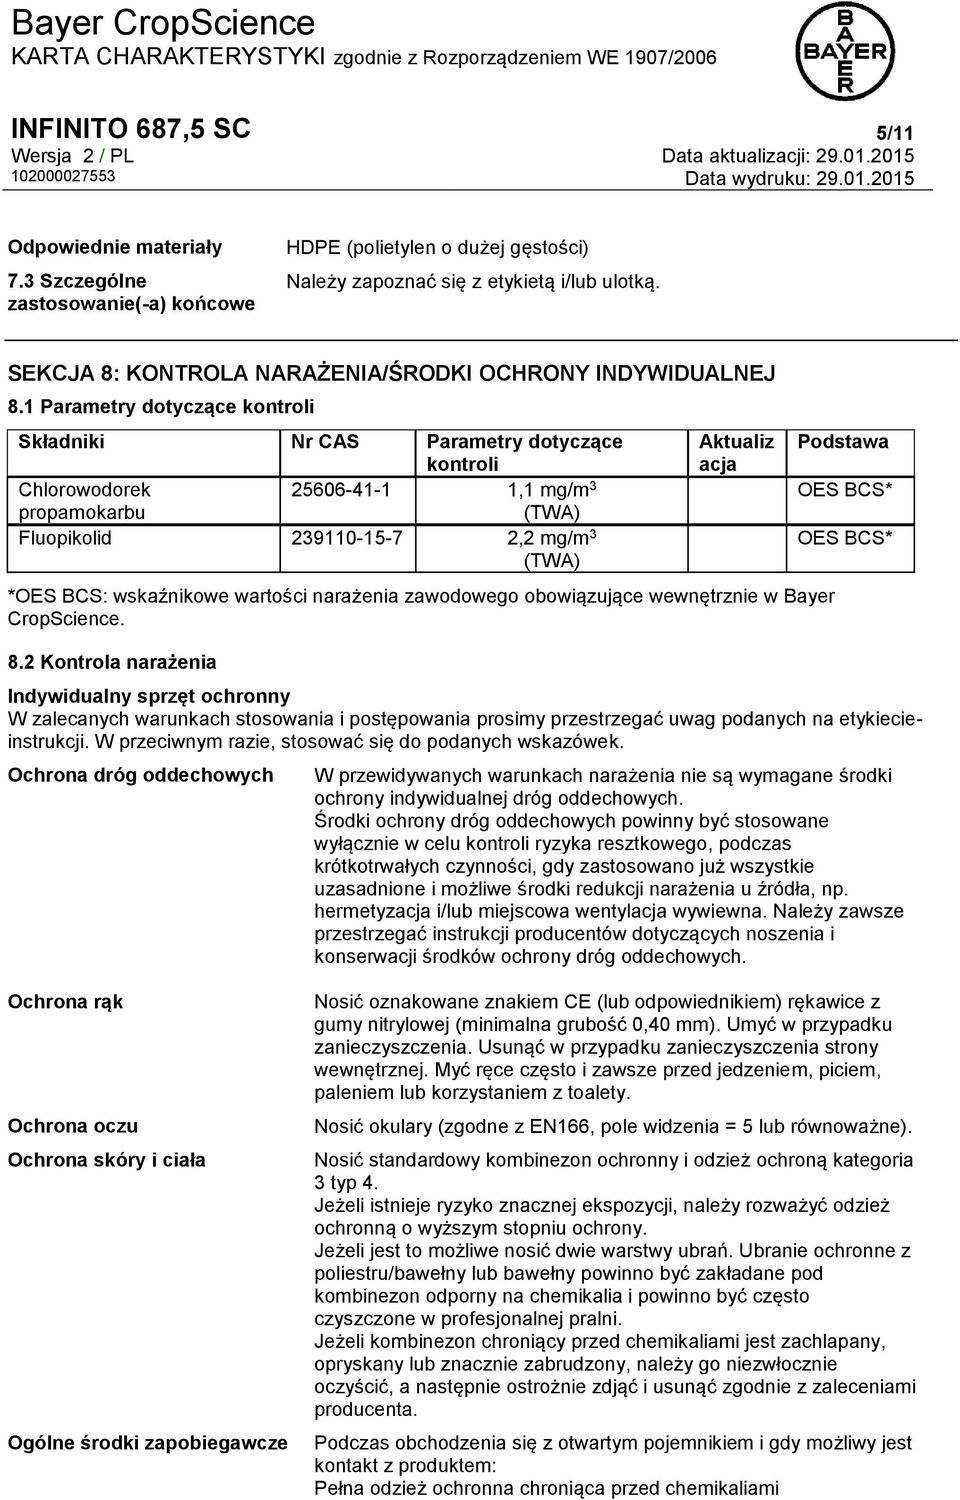 1 Parametry dotyczące kontroli Składniki Nr CAS Parametry dotyczące kontroli Chlorowodorek 25606-41-1 1,1 mg/m 3 propamokarbu (TWA) Fluopikolid 239110-15-7 2,2 mg/m 3 (TWA) Aktualiz acja *OES BCS: